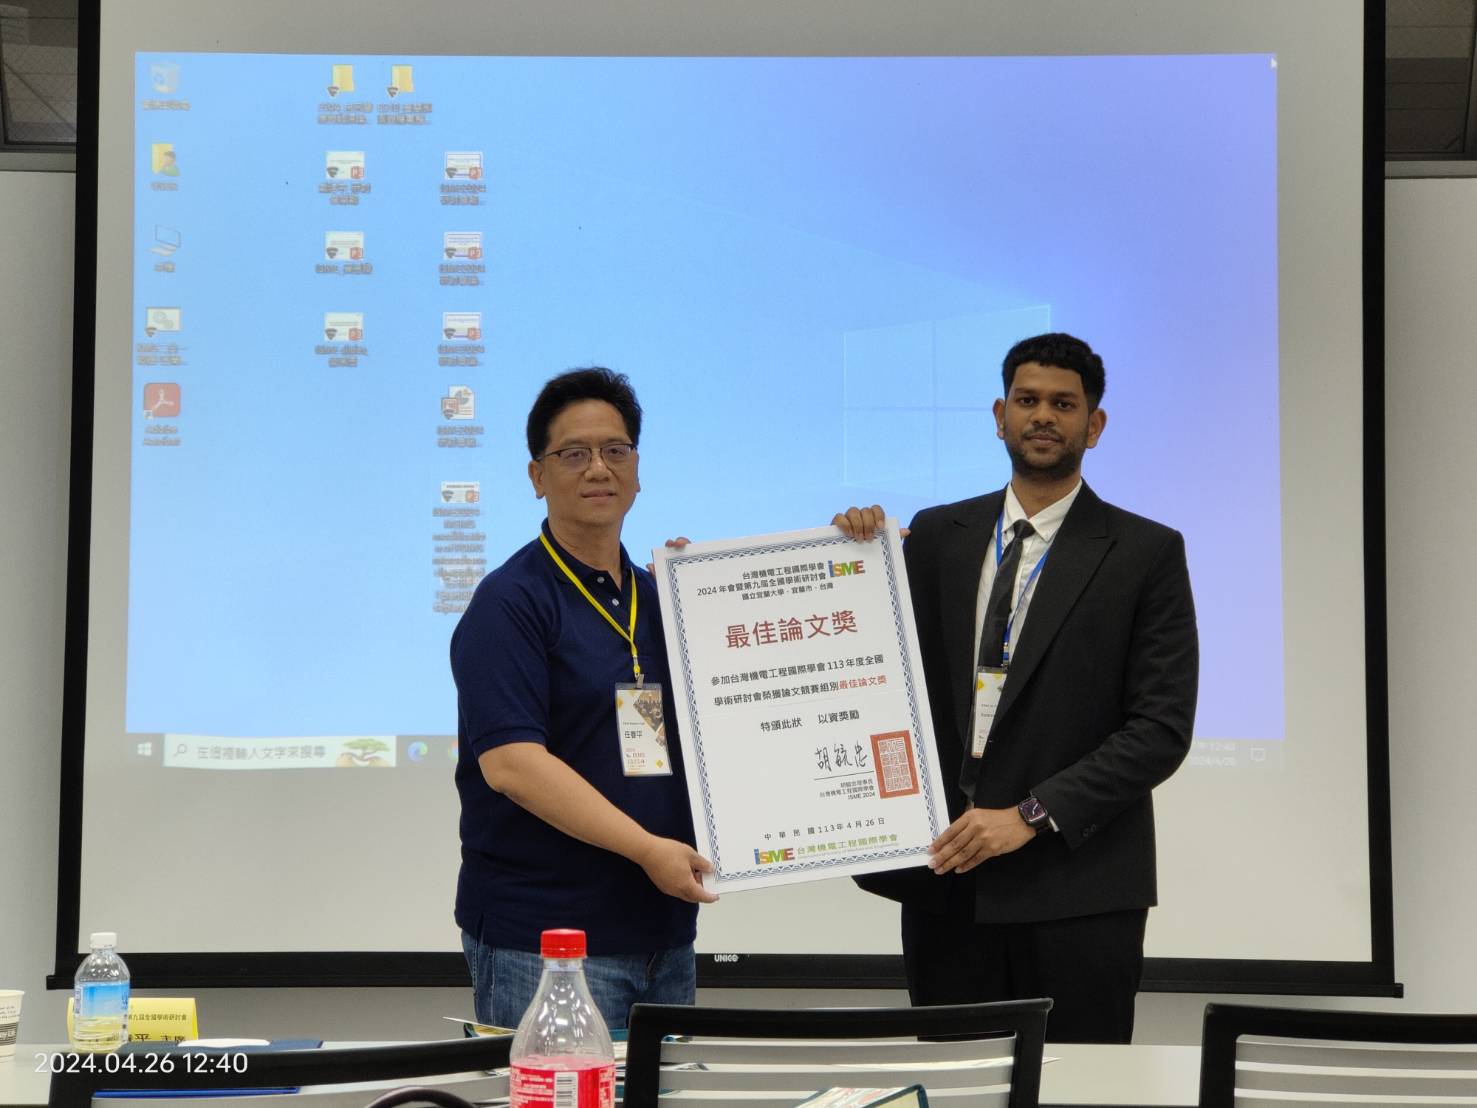 本系碩士生謝米（Sameer Shaik）榮獲台灣機電工程國際學會研討會最佳論文獎